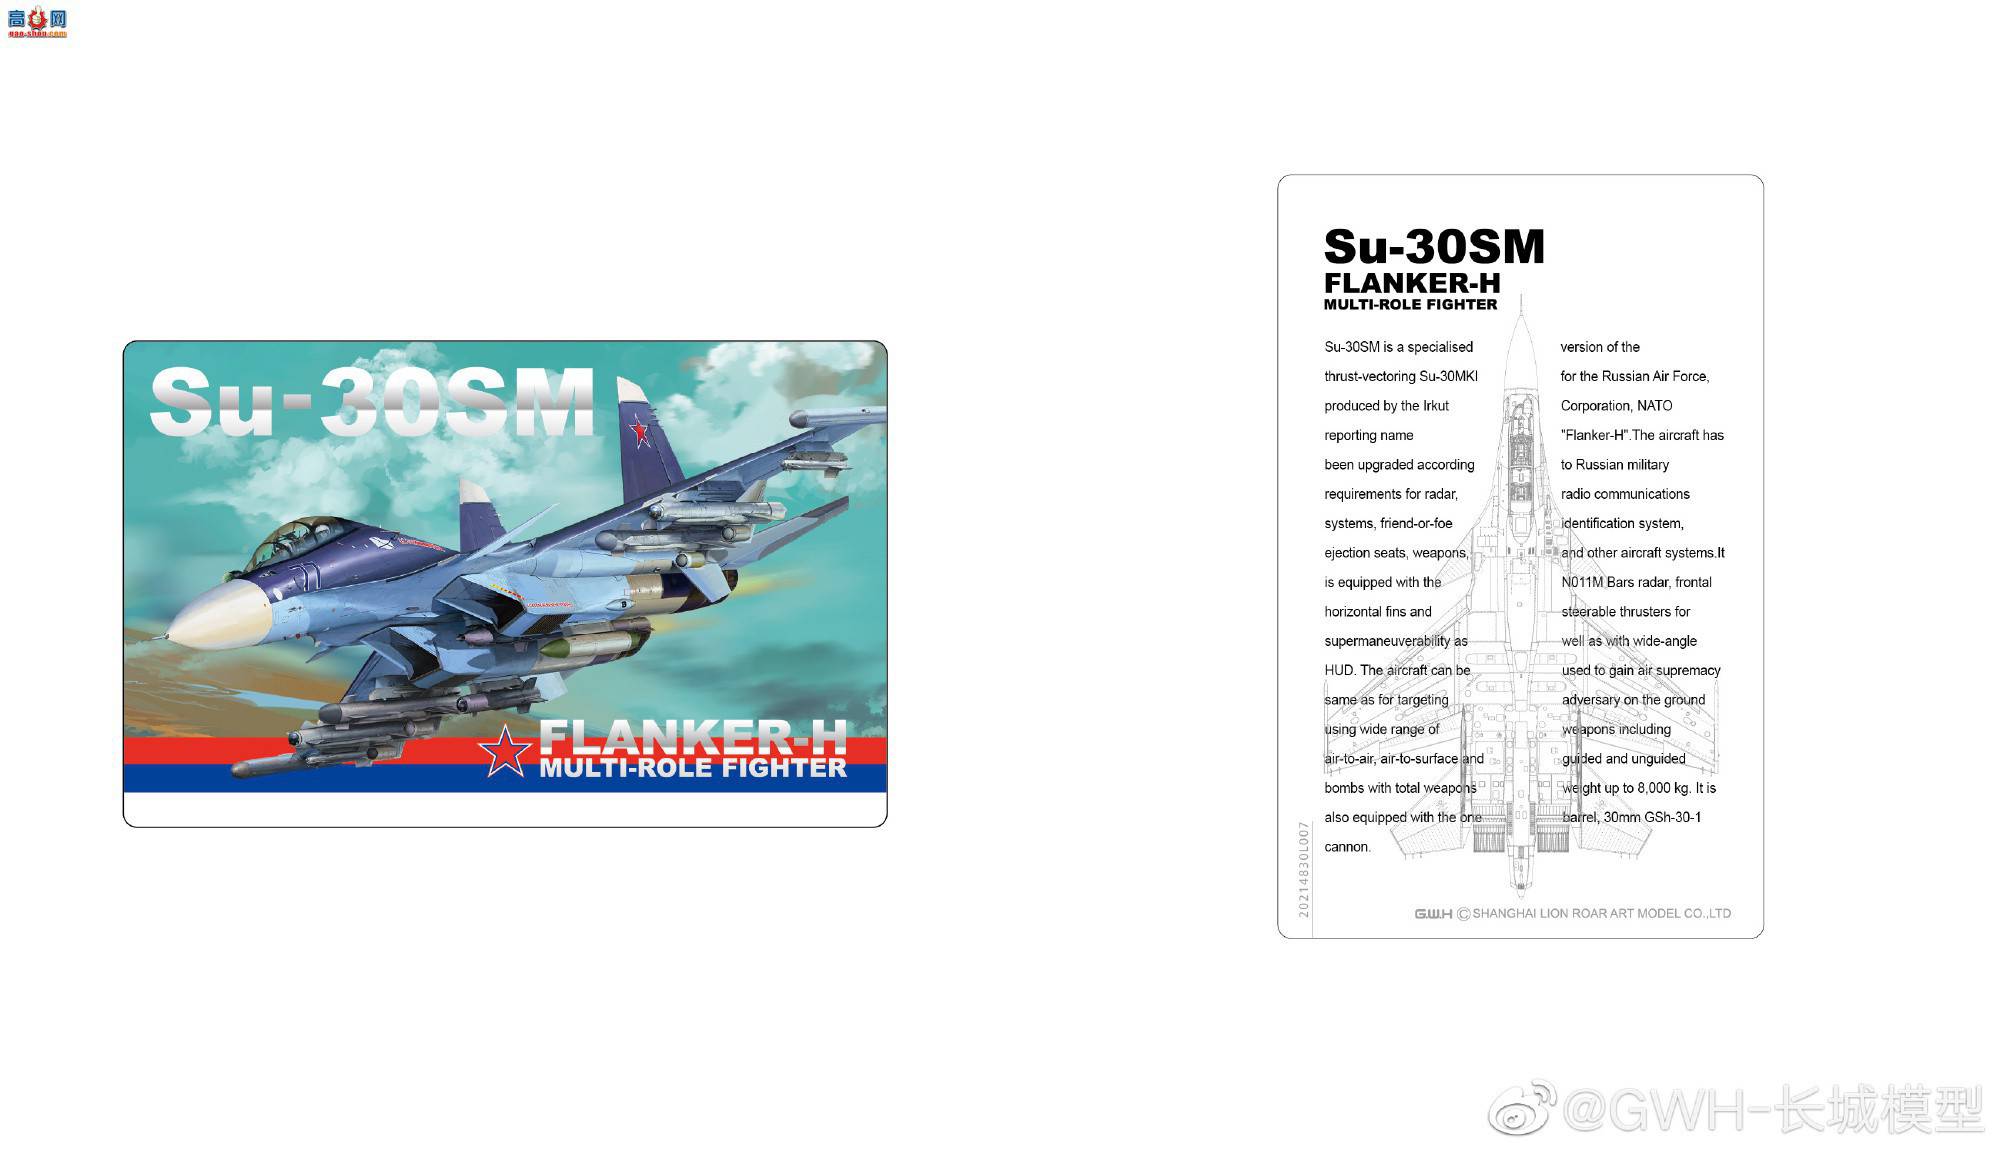 【长城新品】L4830 Su-30SM “侧卫-H” 多用途战斗机